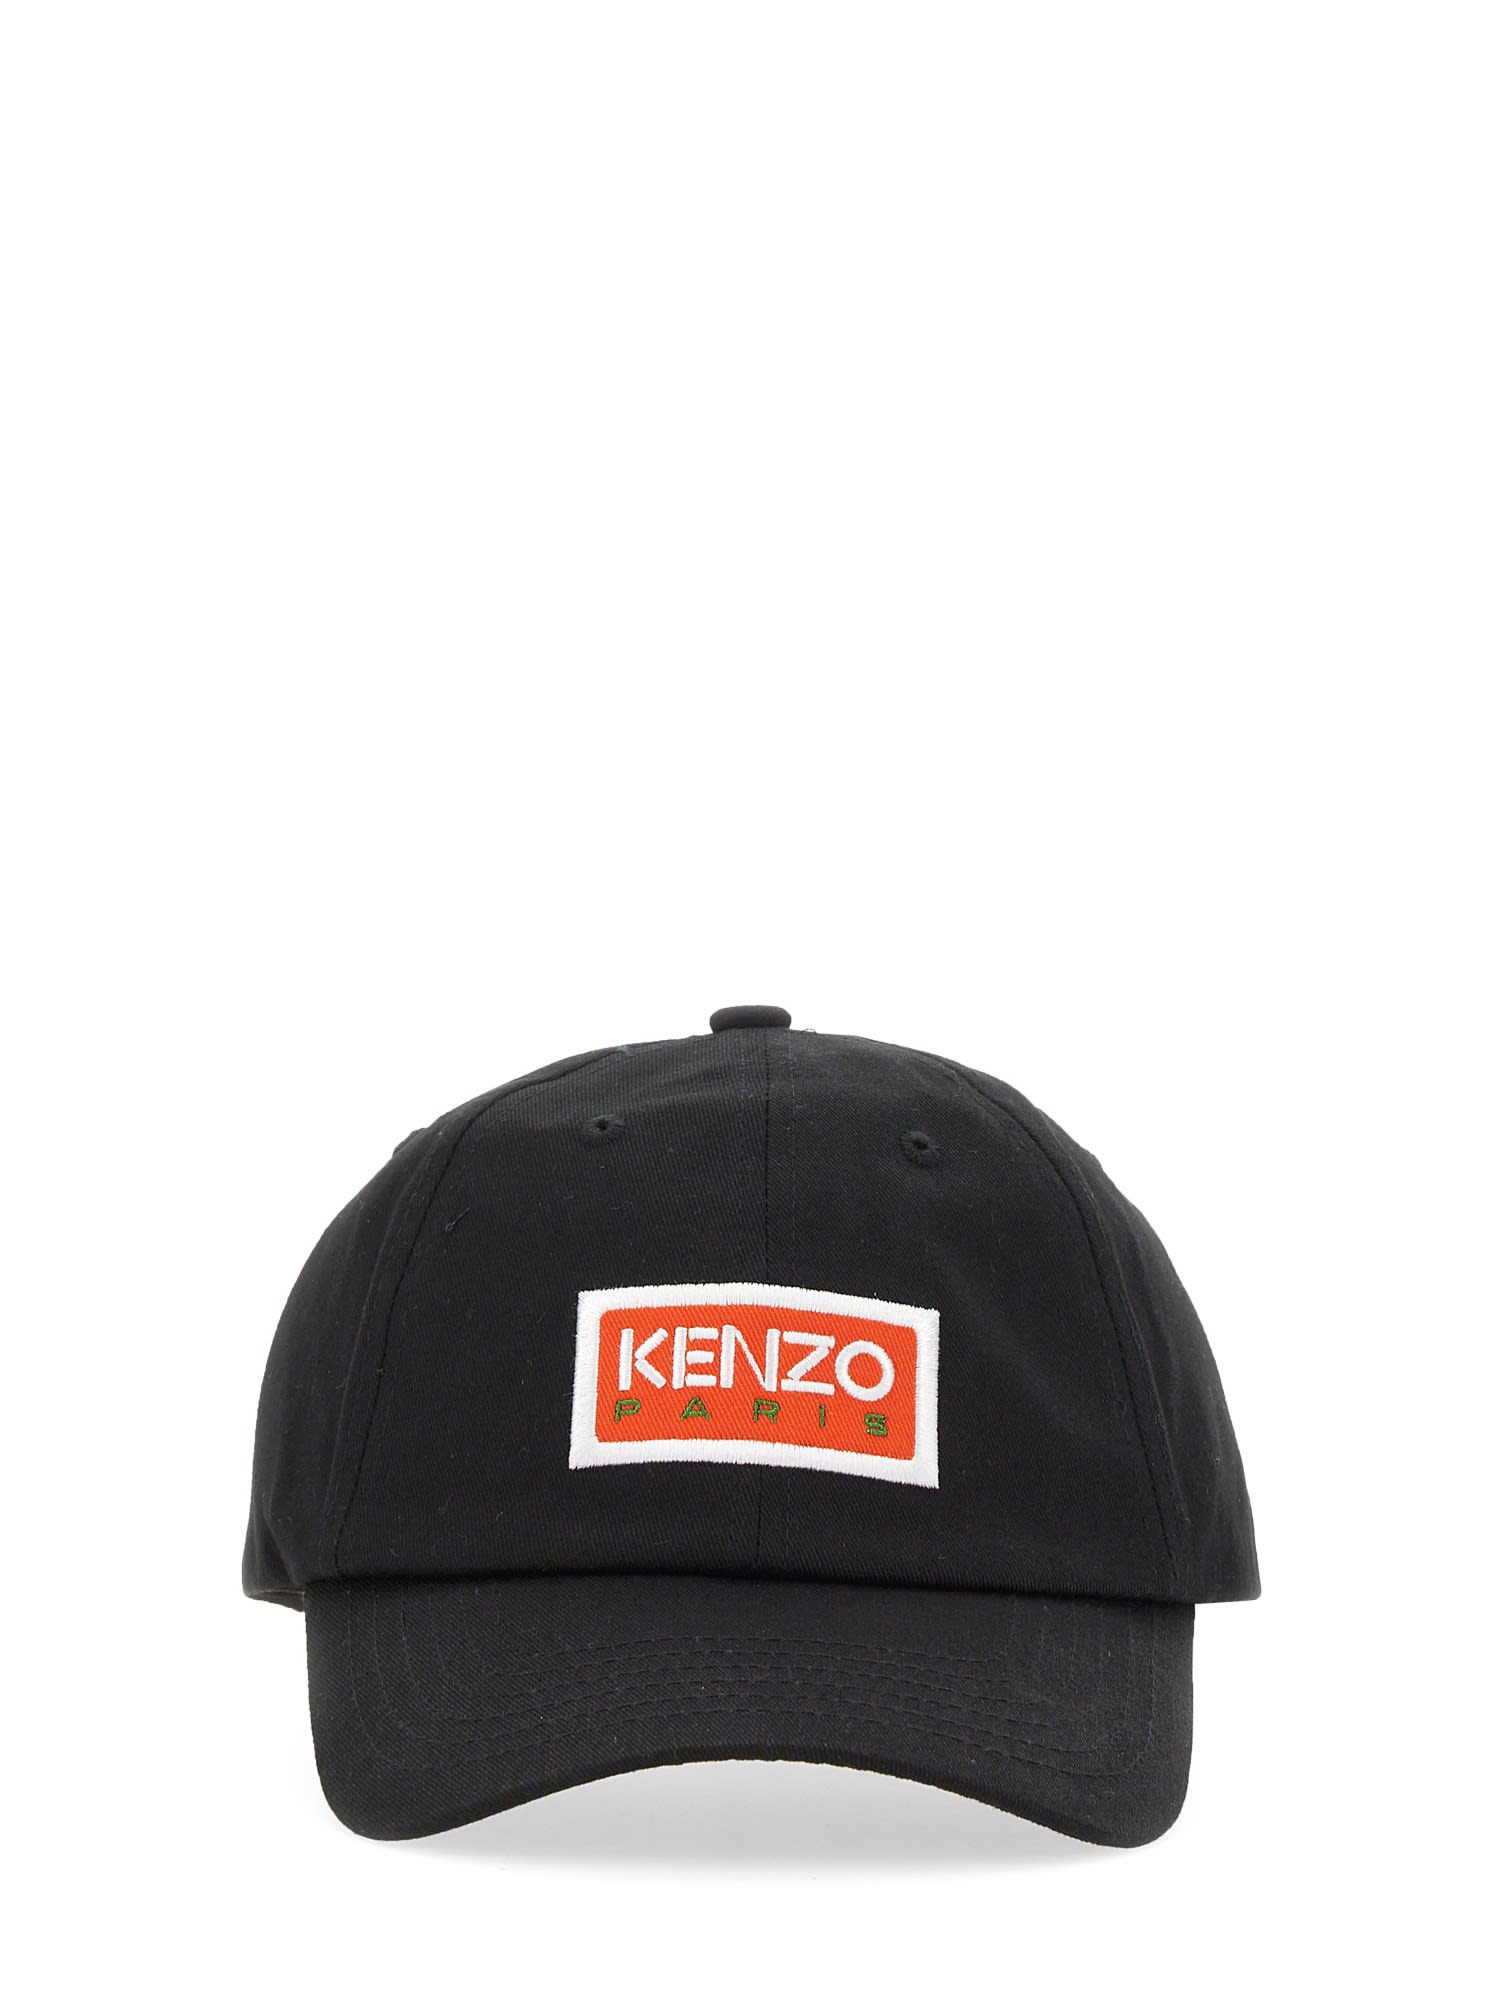 KENZO BASEBALL HAT WITH LOGO